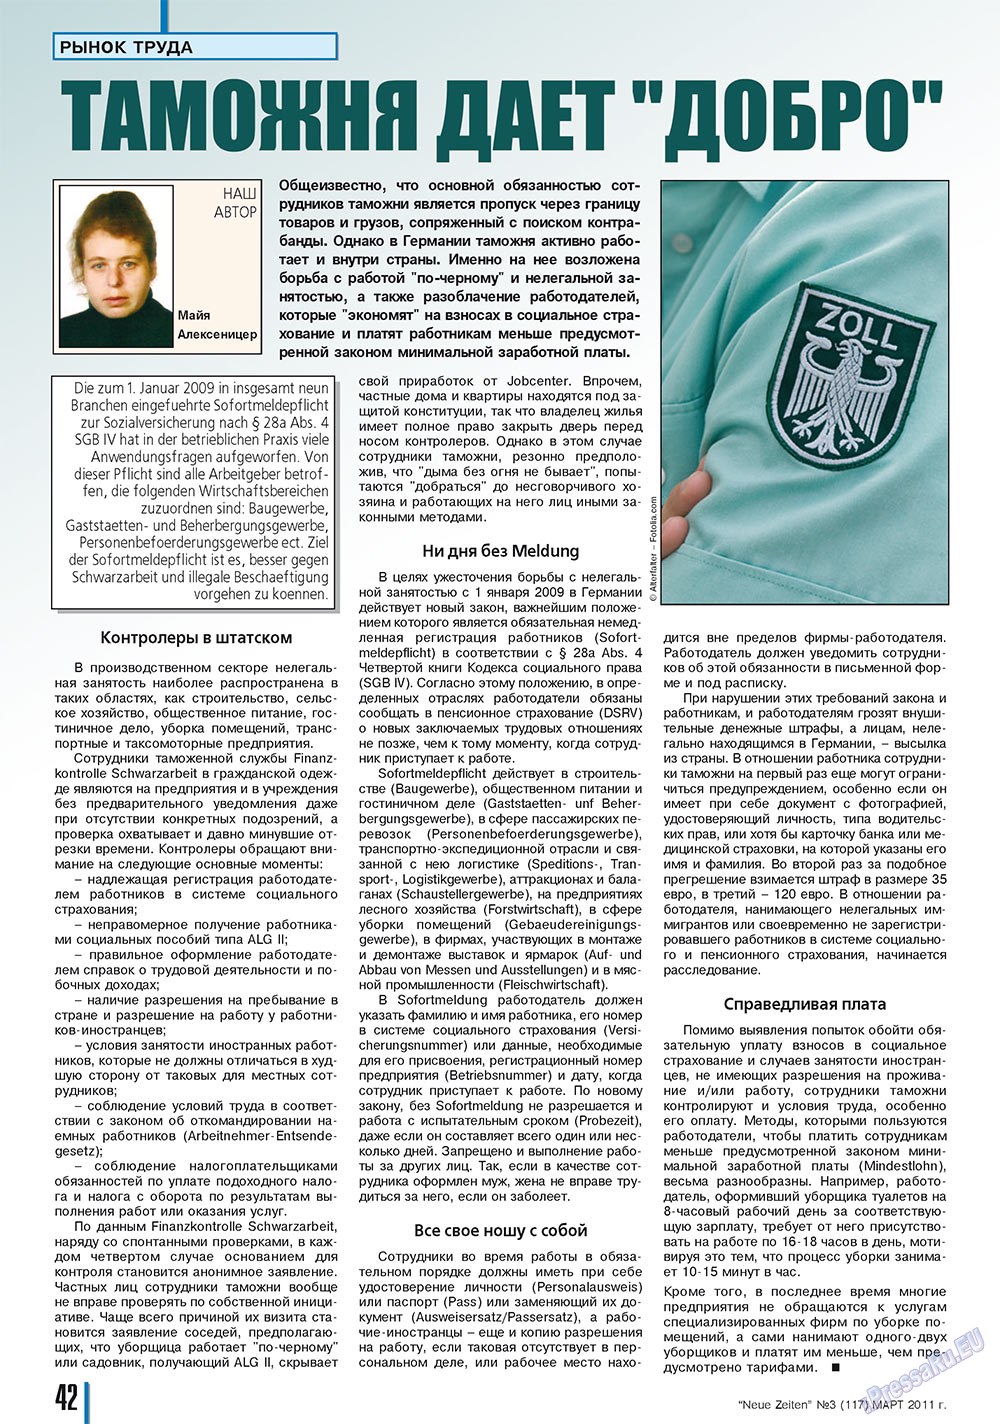 Neue Zeiten (Zeitschrift). 2011 Jahr, Ausgabe 3, Seite 42